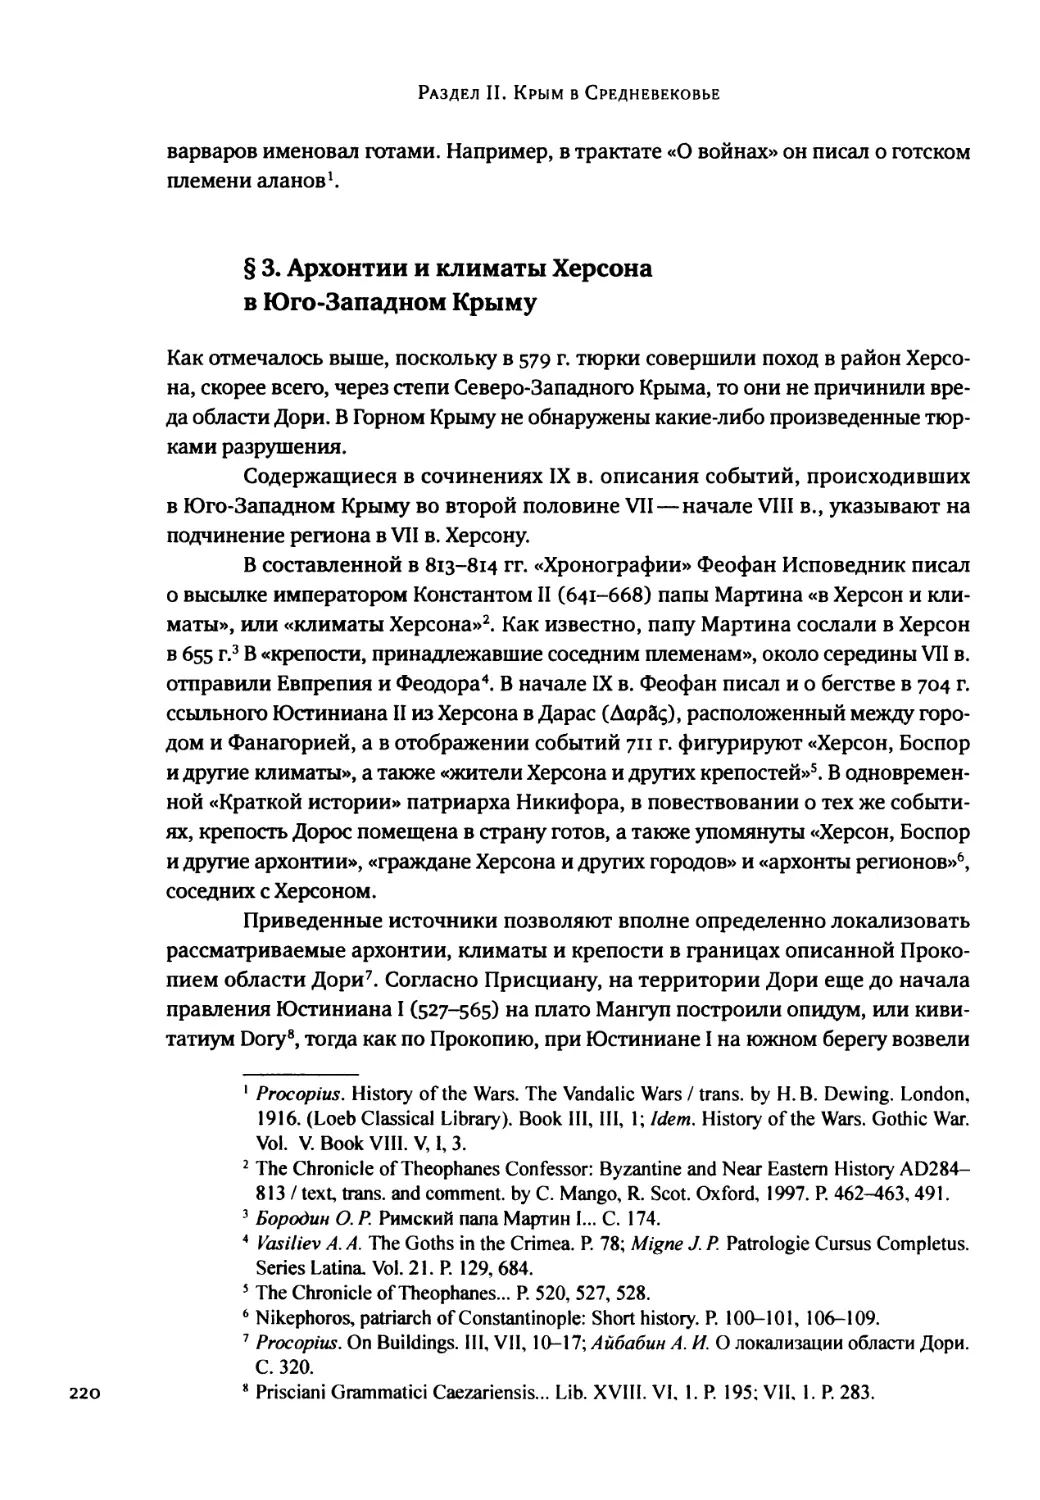 § 3. Архонтии и климаты Херсона в Юго-Западном Крыму